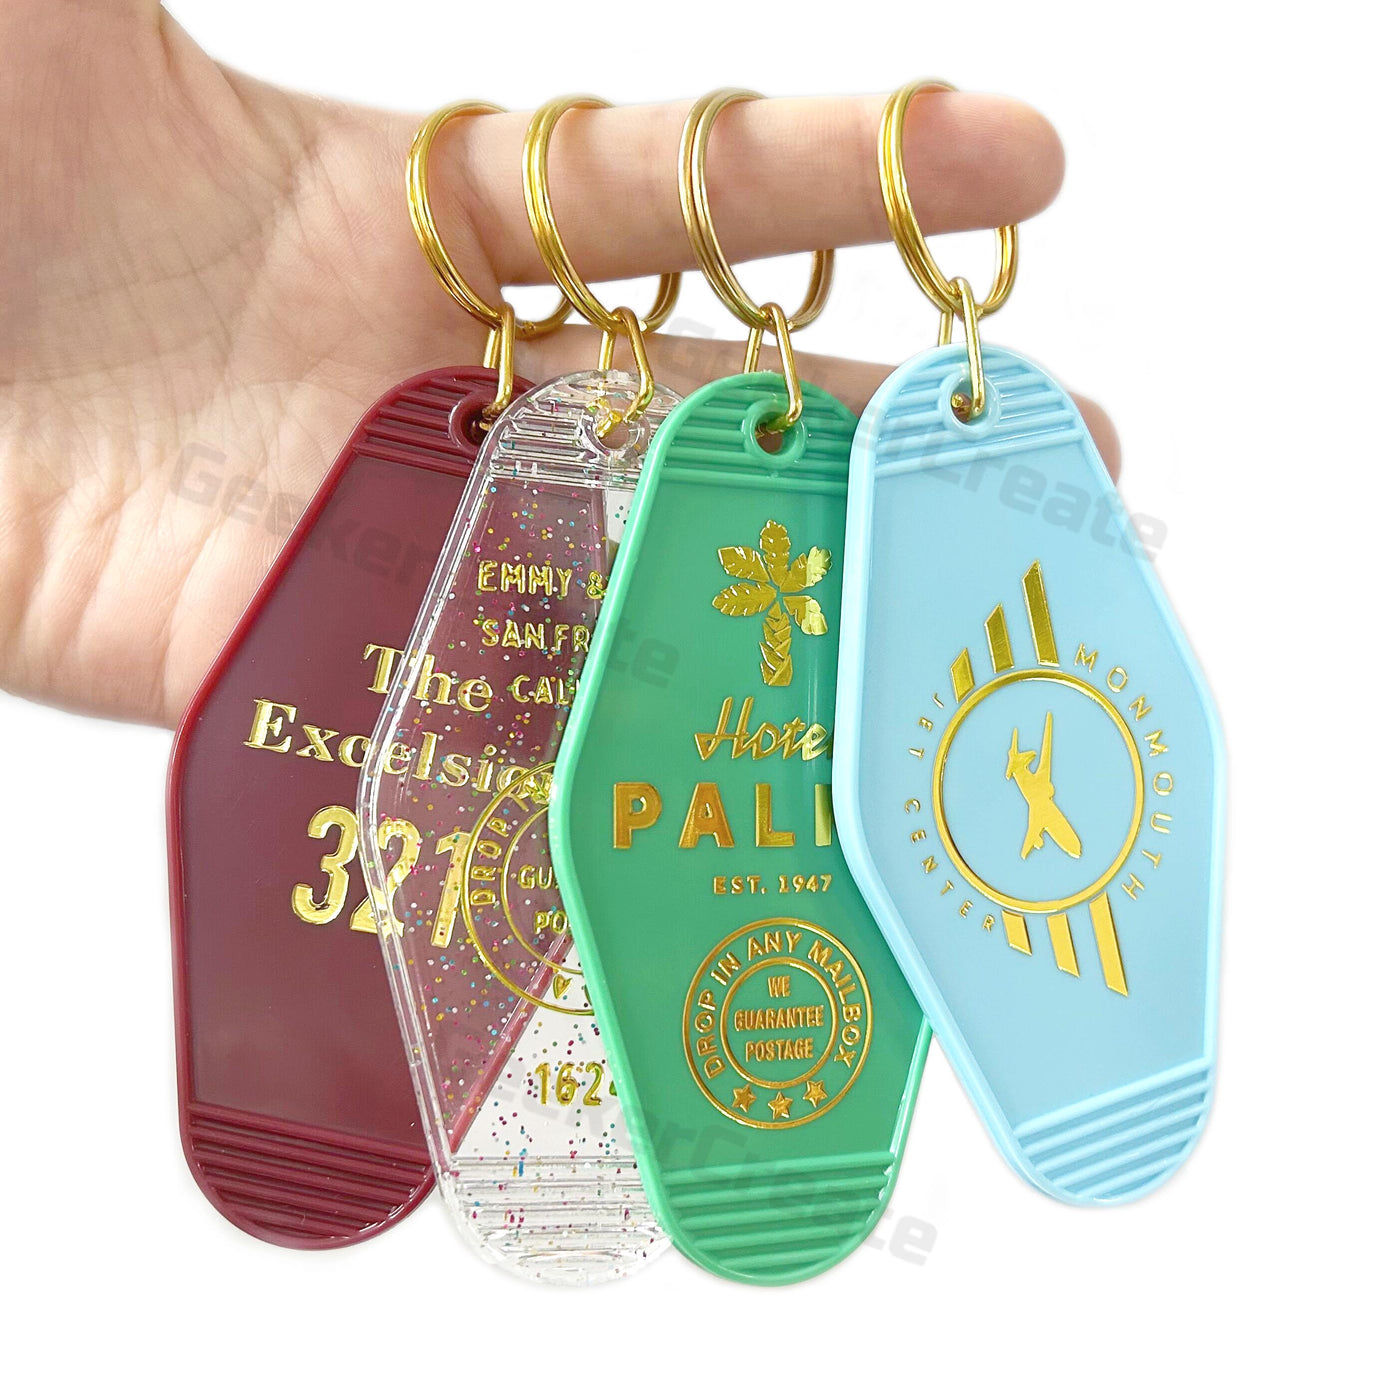 50pcs Bulk Custom Gold Foil Stamped Plastic Keychains Retro Vintage Keyrings Design For Hotel Motel Resorts